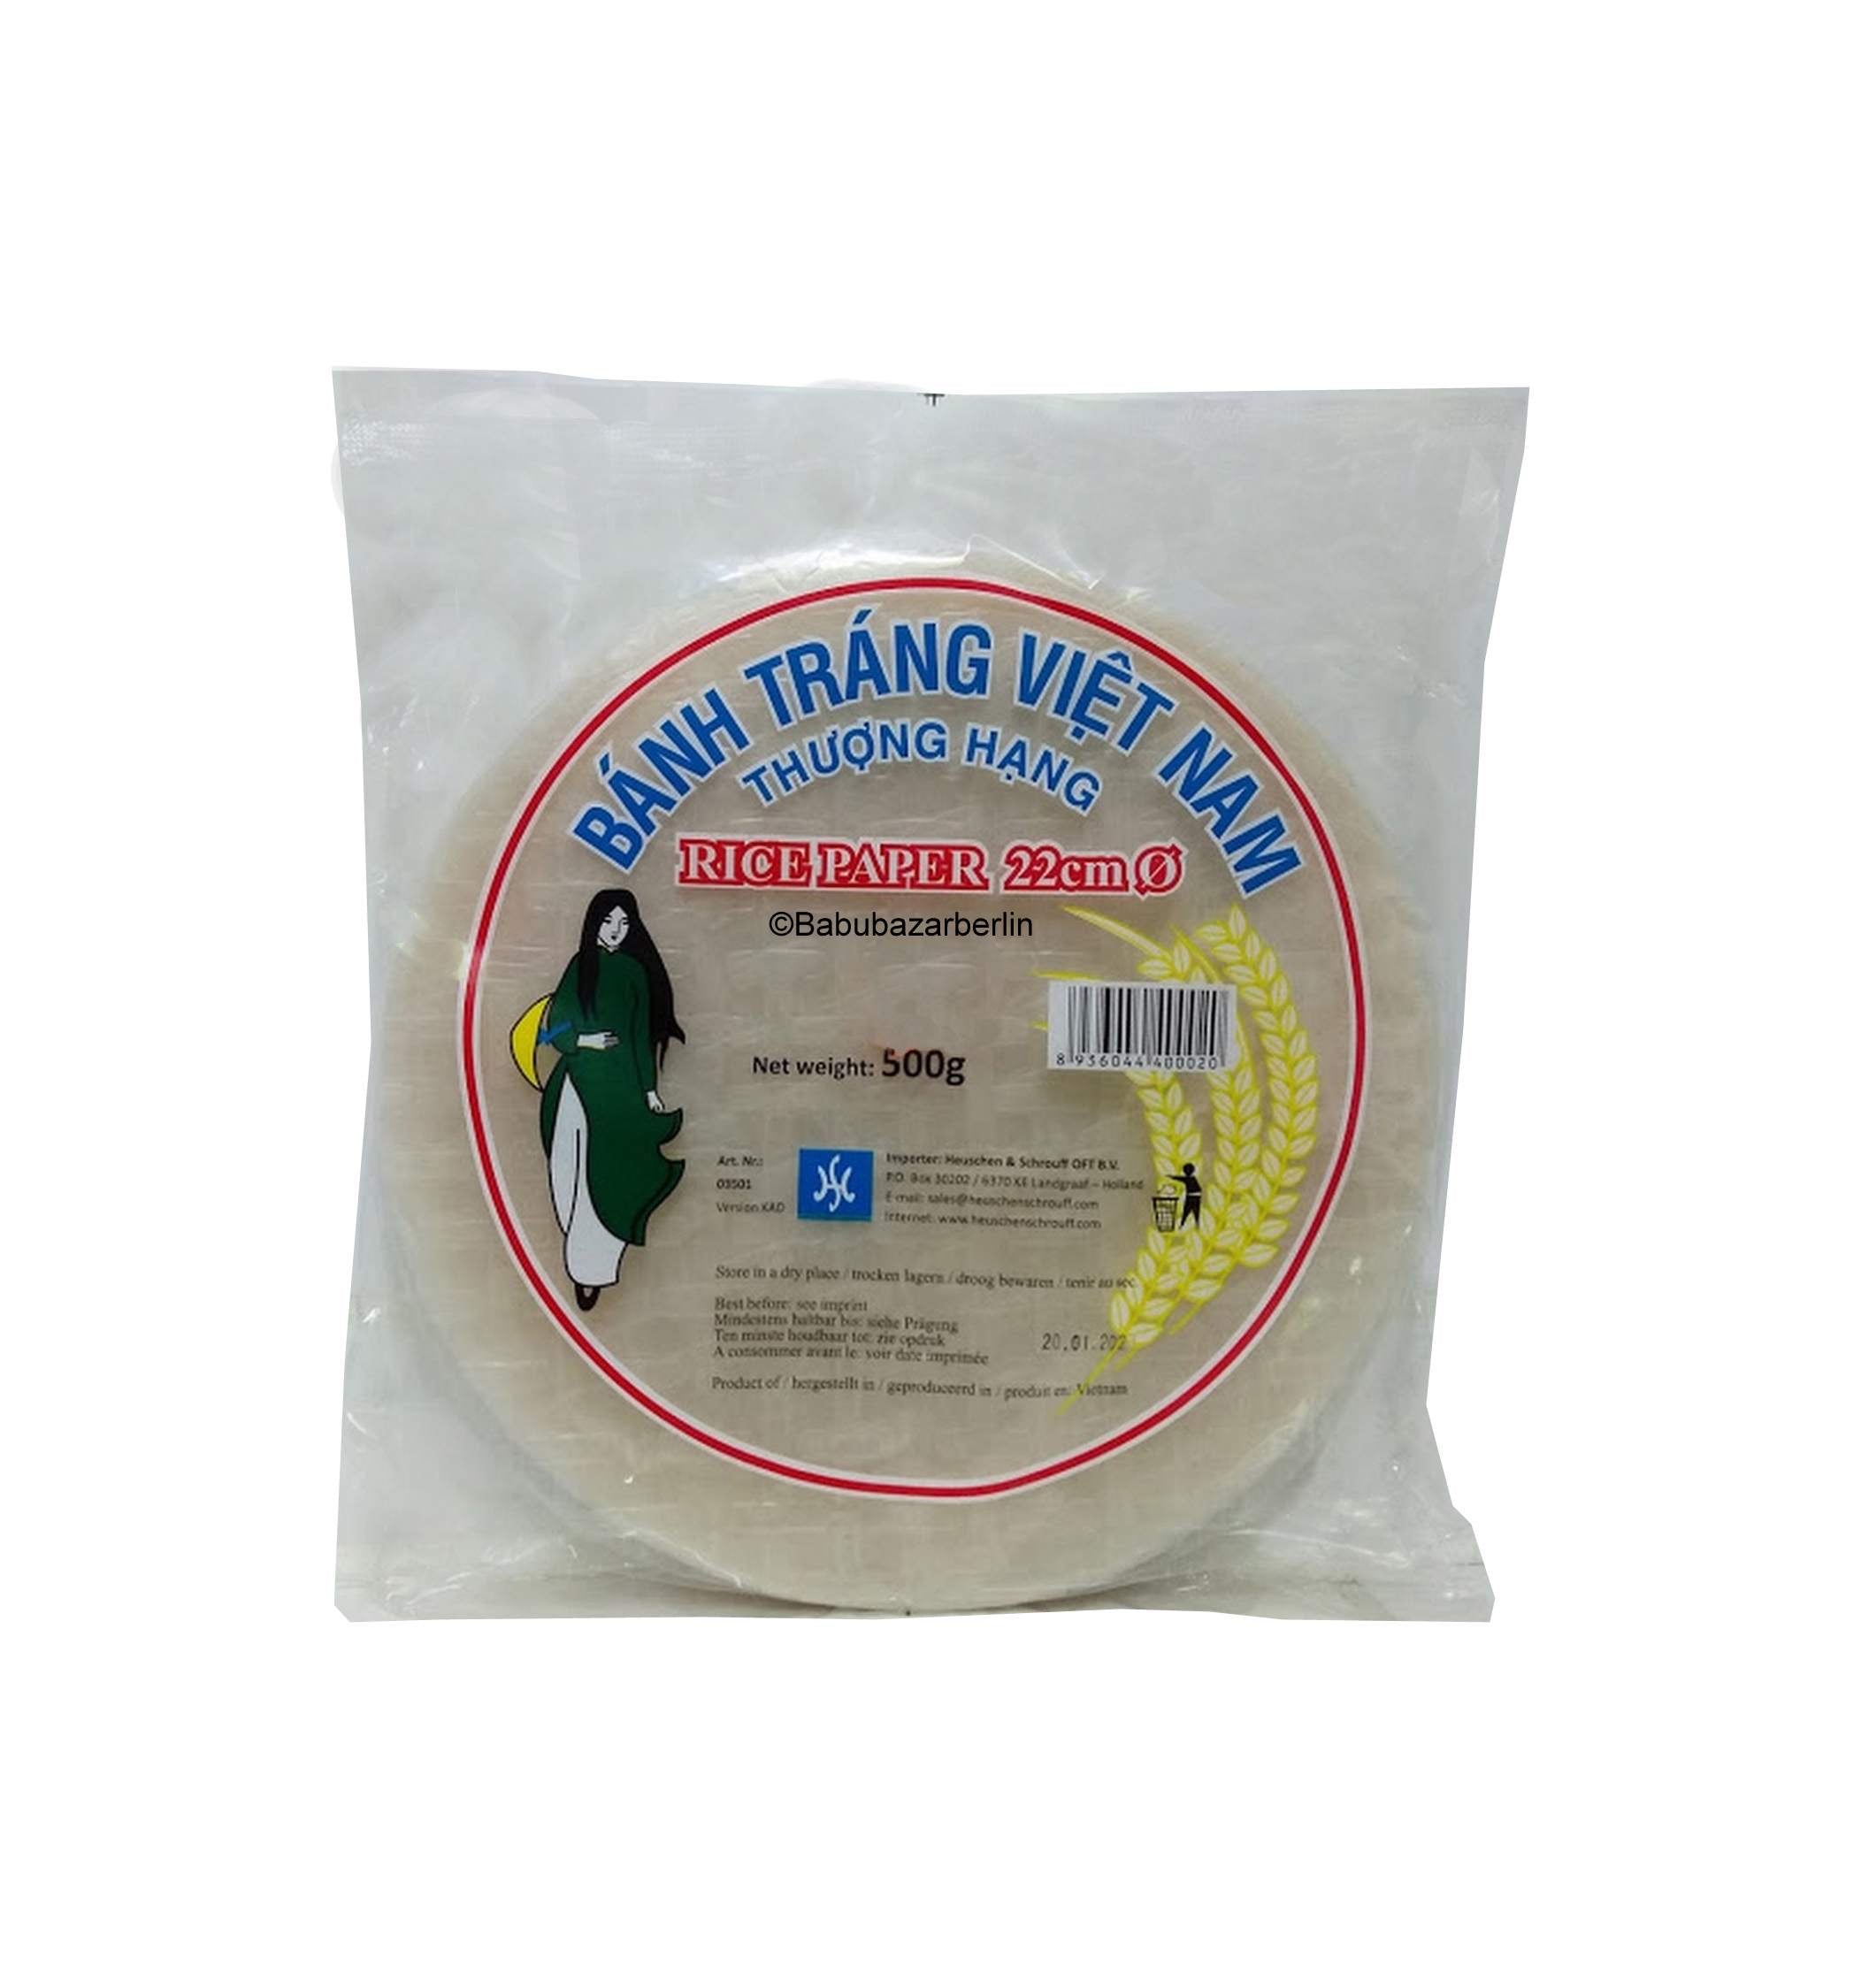 Reispapier Co Gai Viet Nam 22cm 500g- Bánh tráng Viet Nam Thượng Hạng 22cm 500g